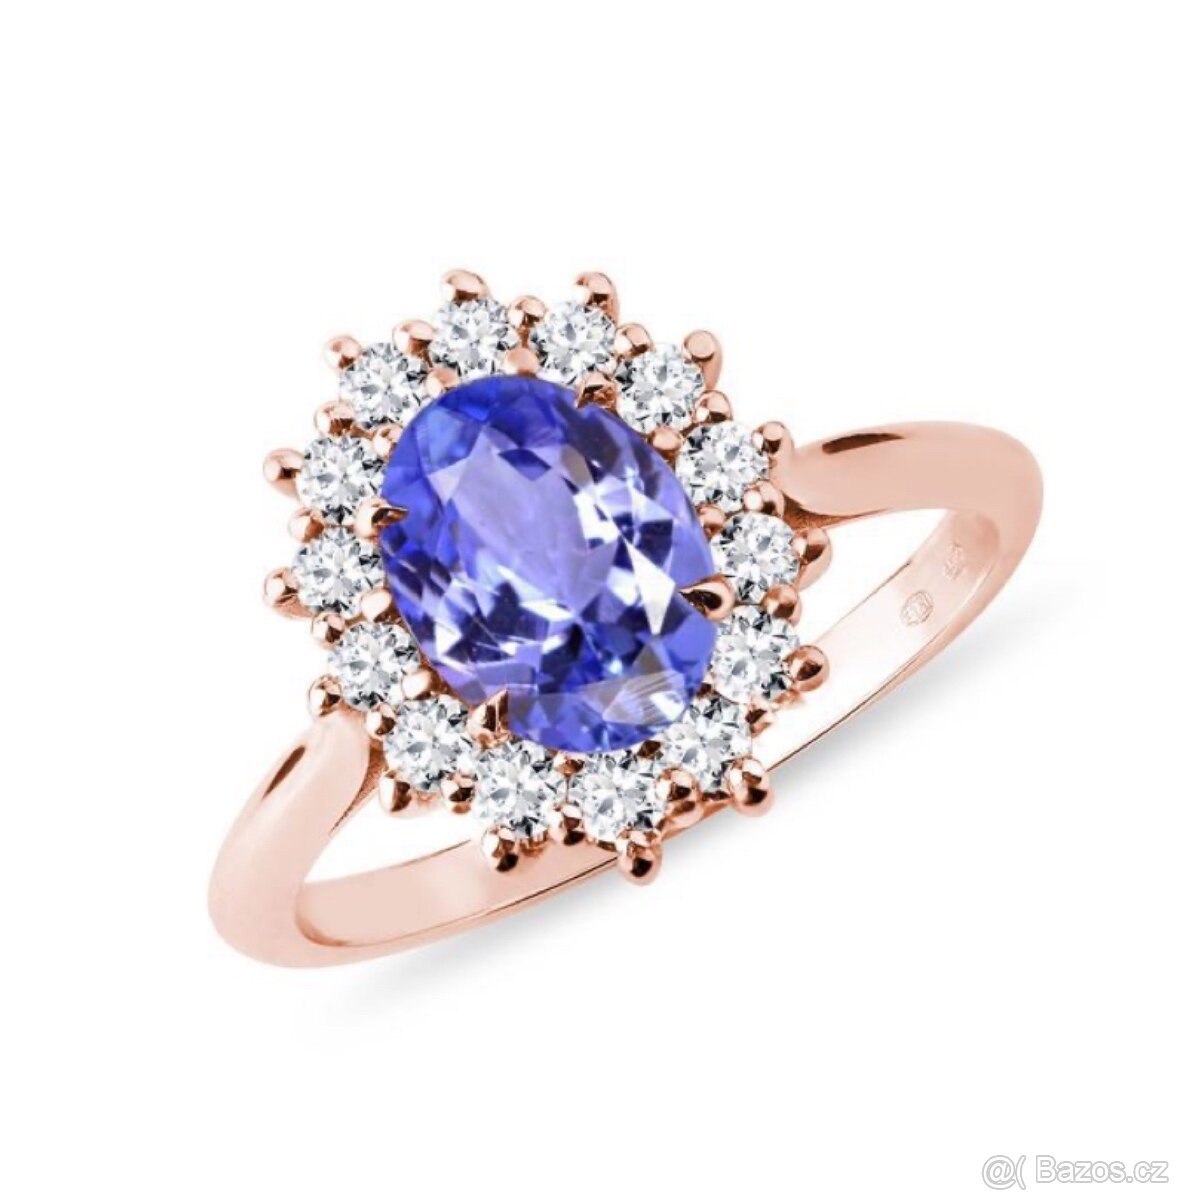 Prsten s tanzanitem a brilianty/diamanty v růžovém zlatě